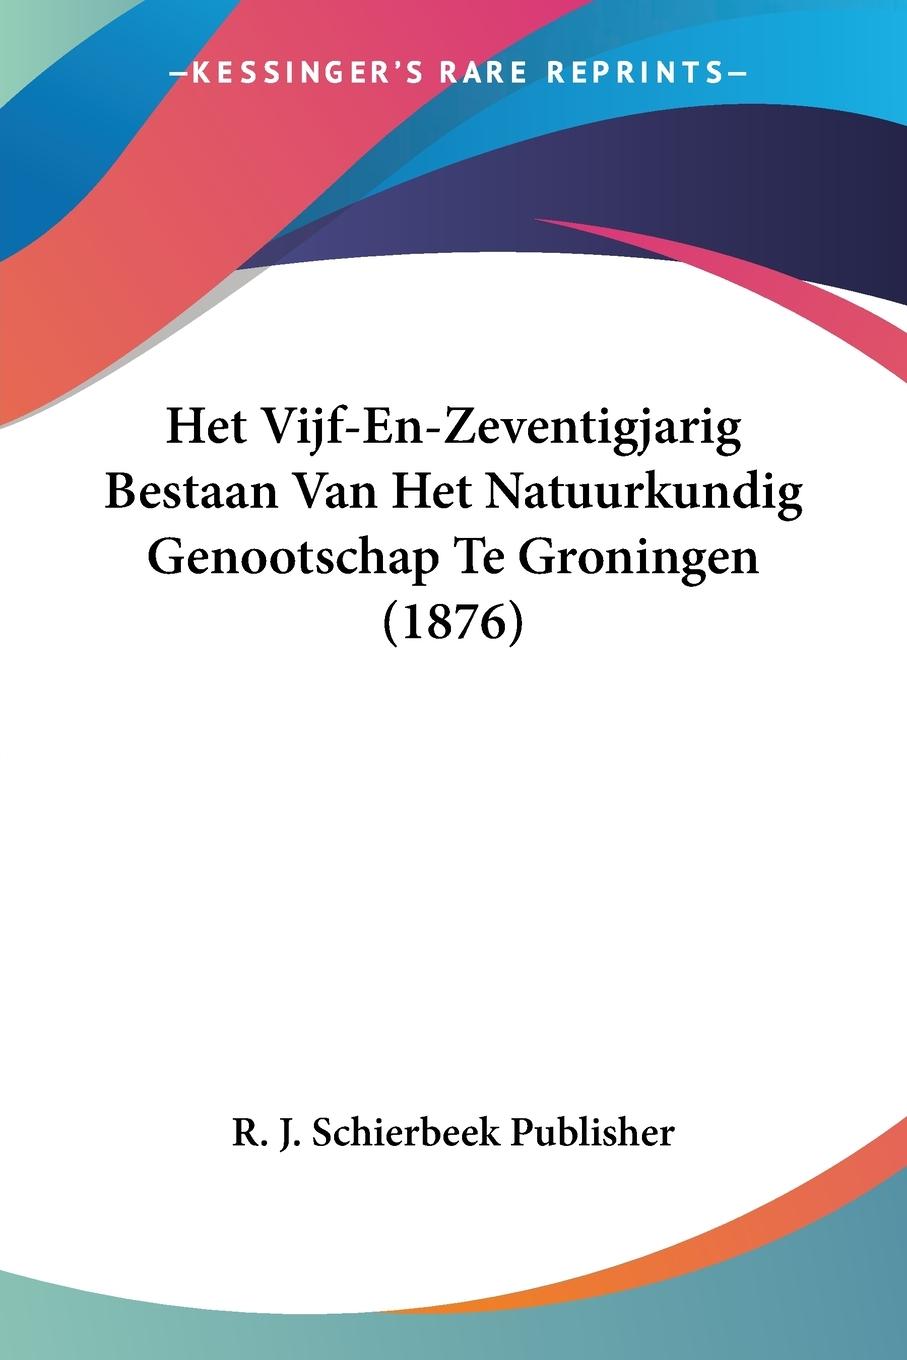 Het Vijf-En-Zeventigjarig Bestaan Van Het Natuurkundig Genootschap Te Groningen (1876) - R. J. Schierbeek Publisher